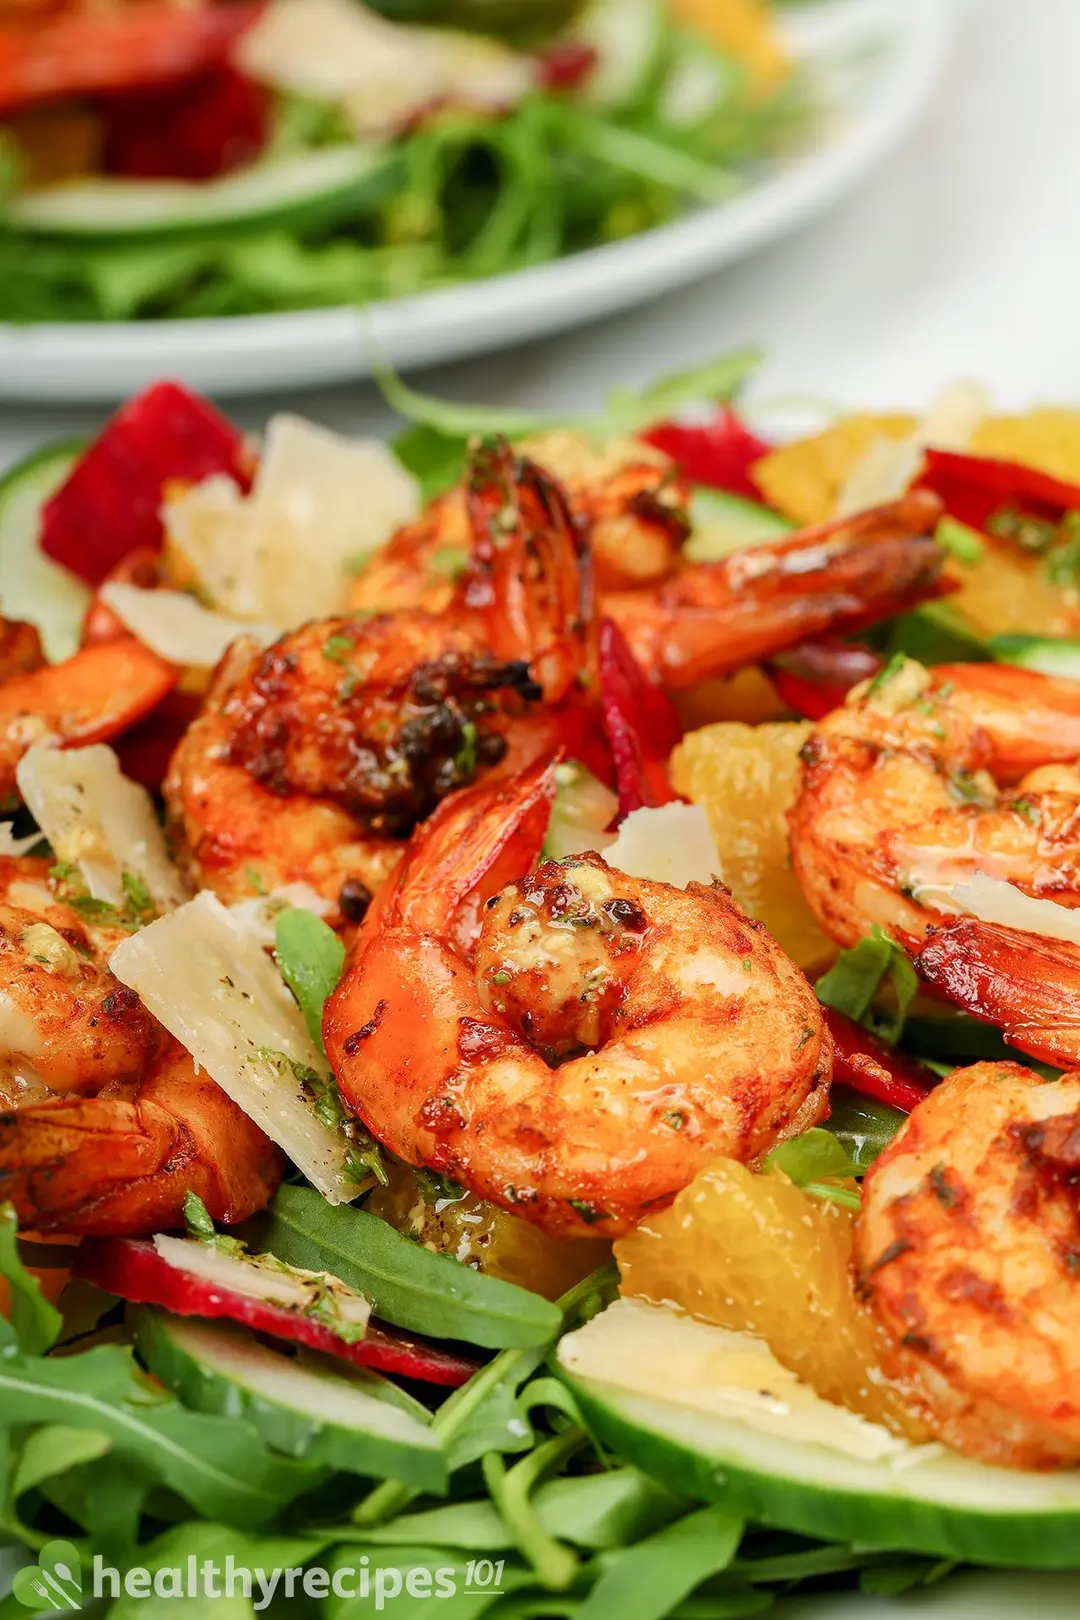 Is Grilled Shrimp Salad Healthy